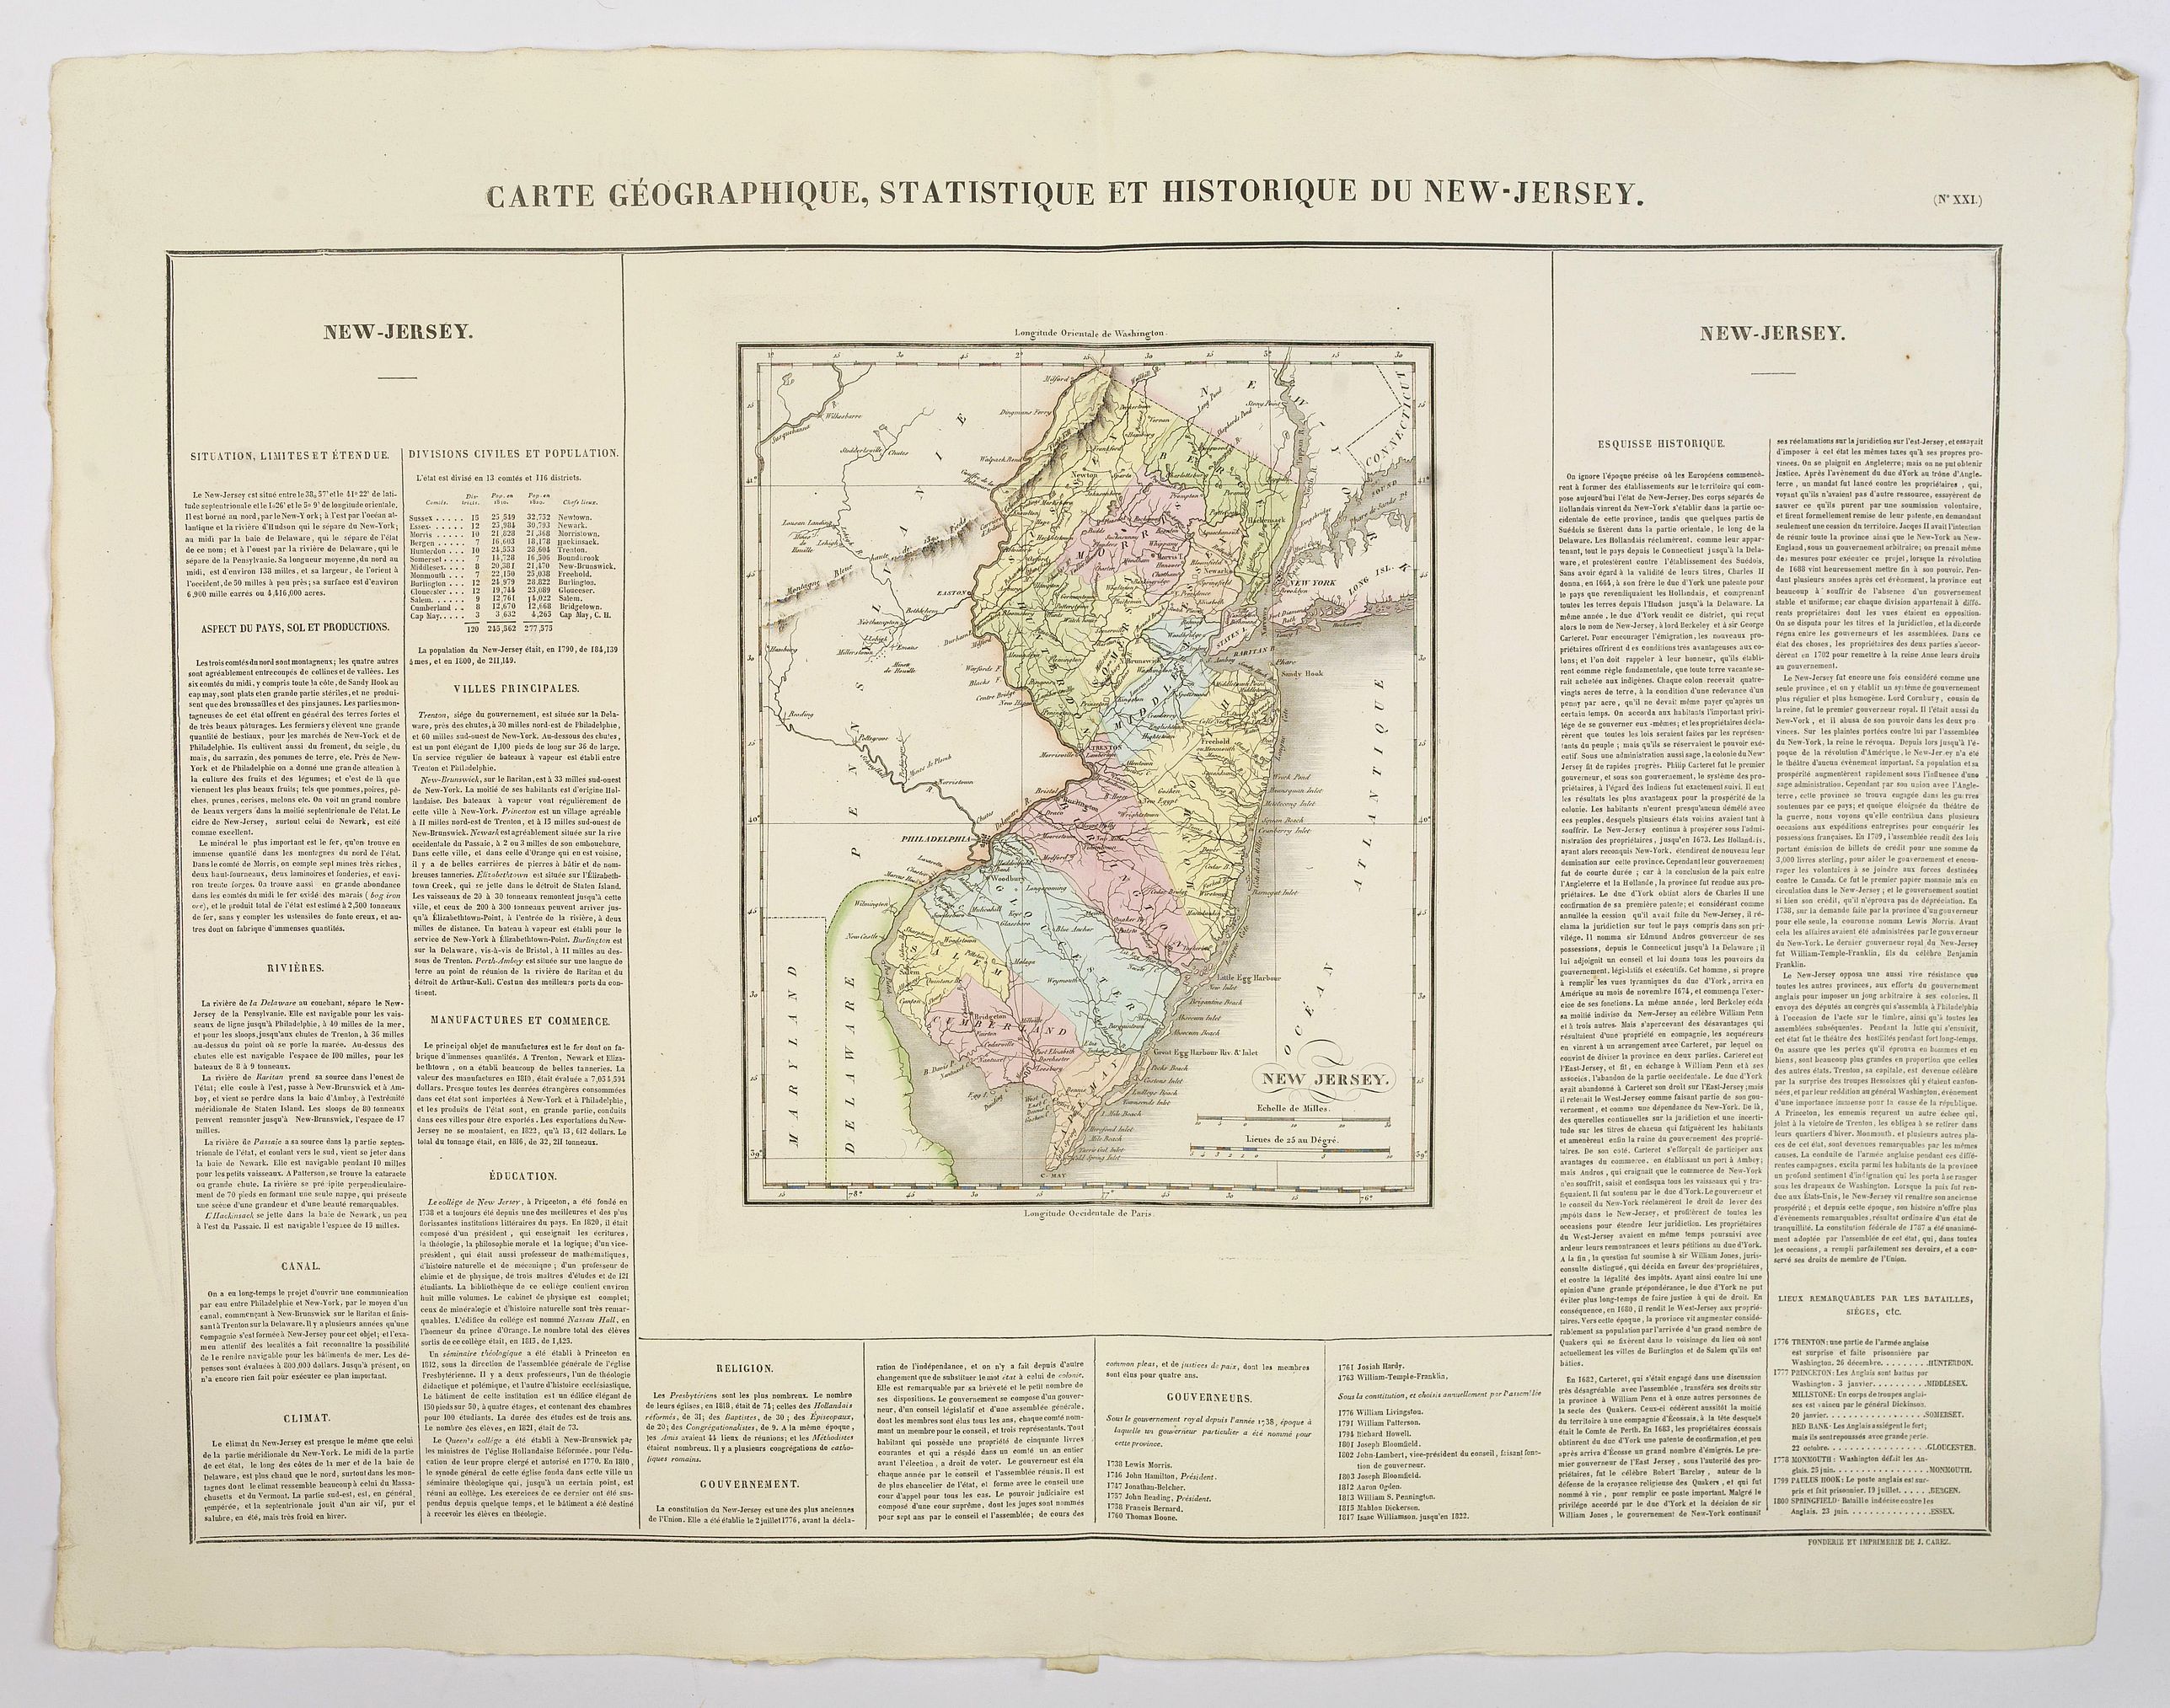 Carte Gographique, Statistique et Historique du New-Jersey